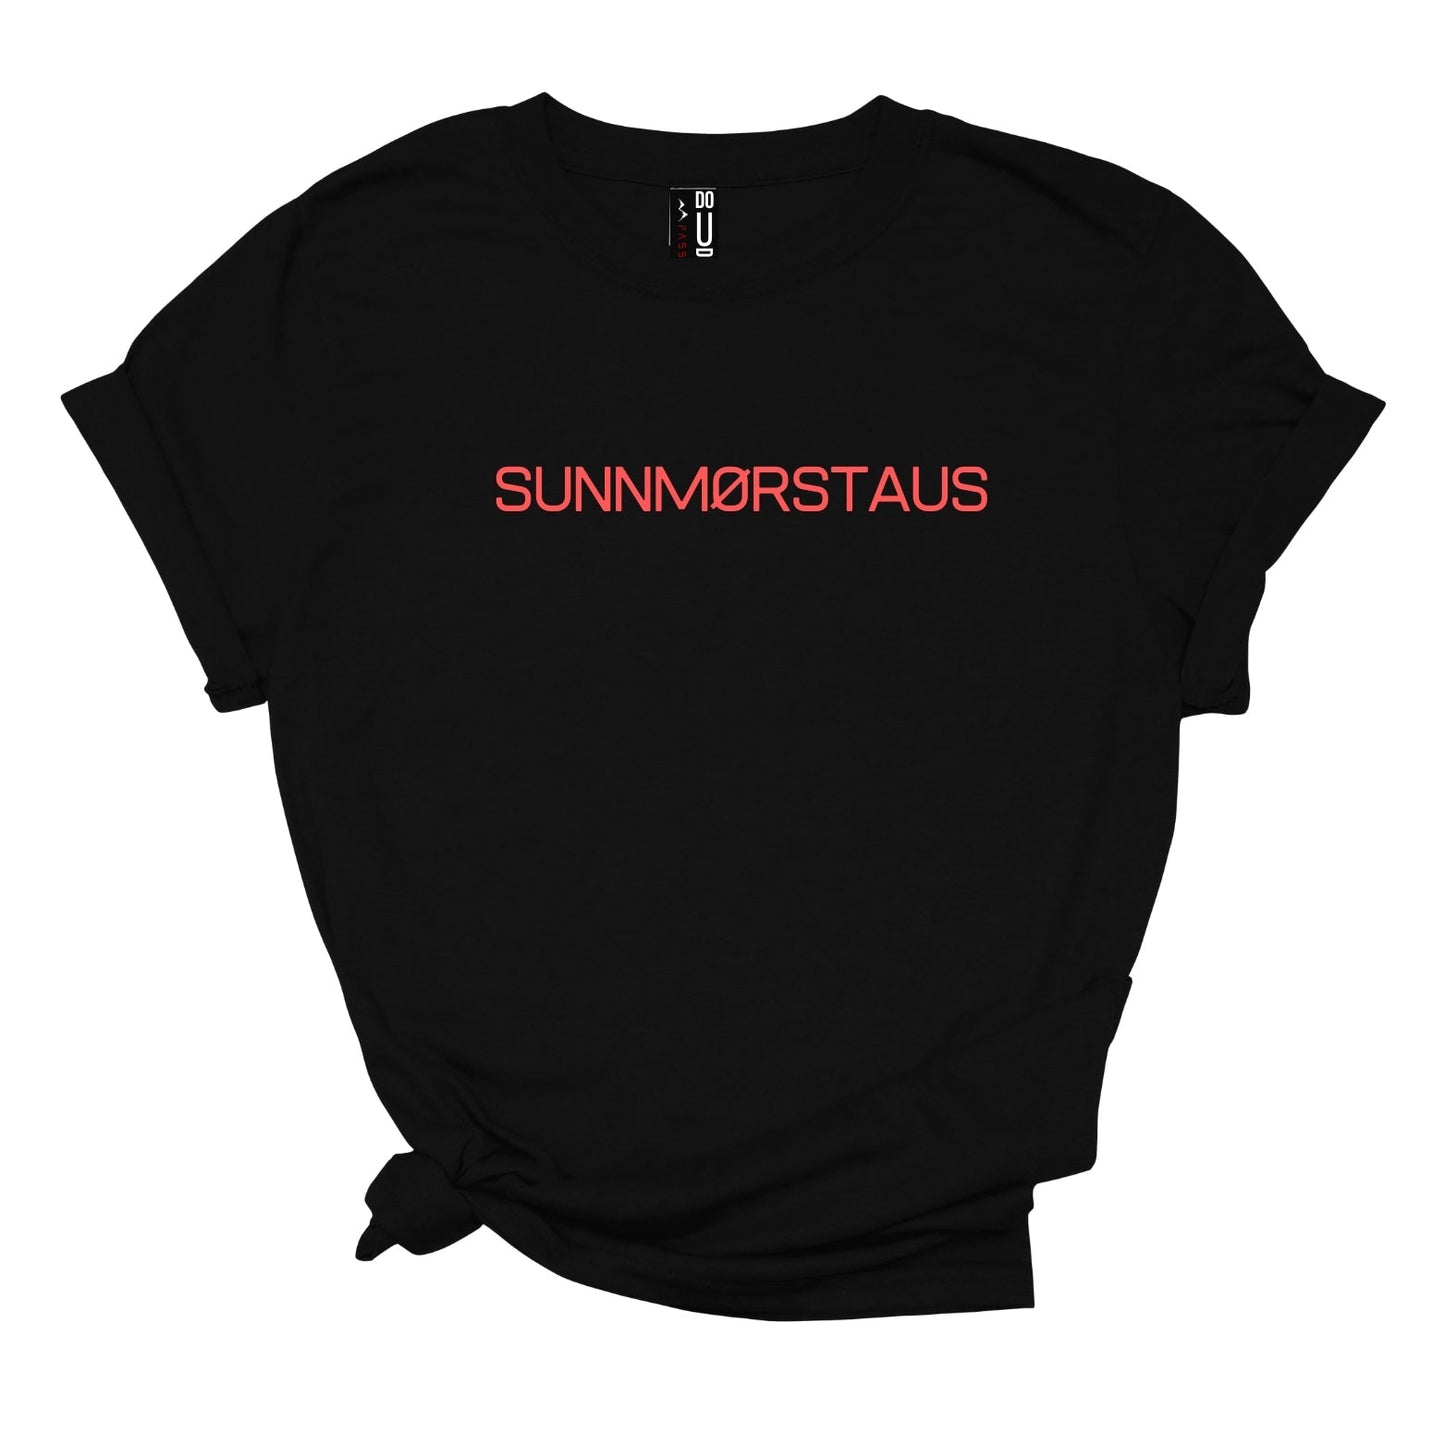 SUNNMØRSTAUS Sunnmørs TEE t-skjorte i dame modell med Sunnmørs-sitat og uttrykk - DoUdare